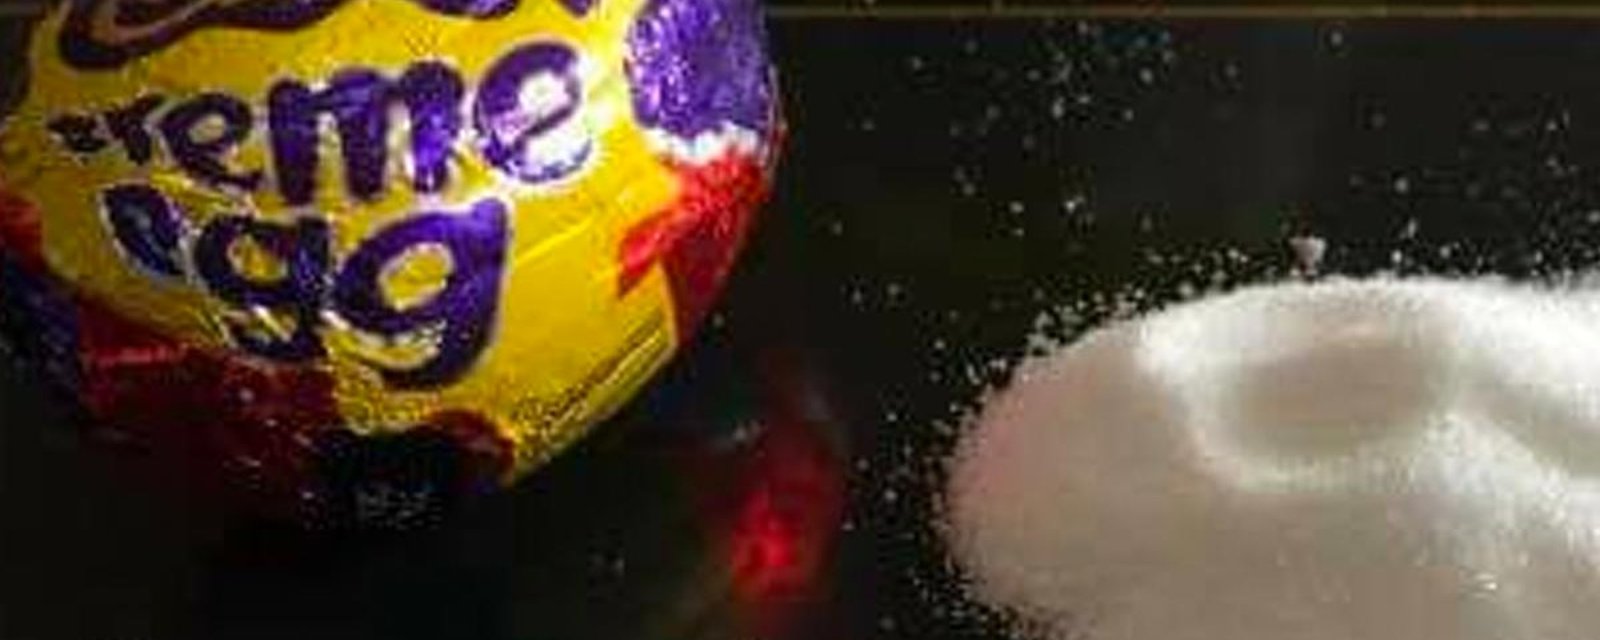 Une femme illustre la quantité de sucre qu'on retrouve dans un seul oeuf Cadbury et c'est alarmant.